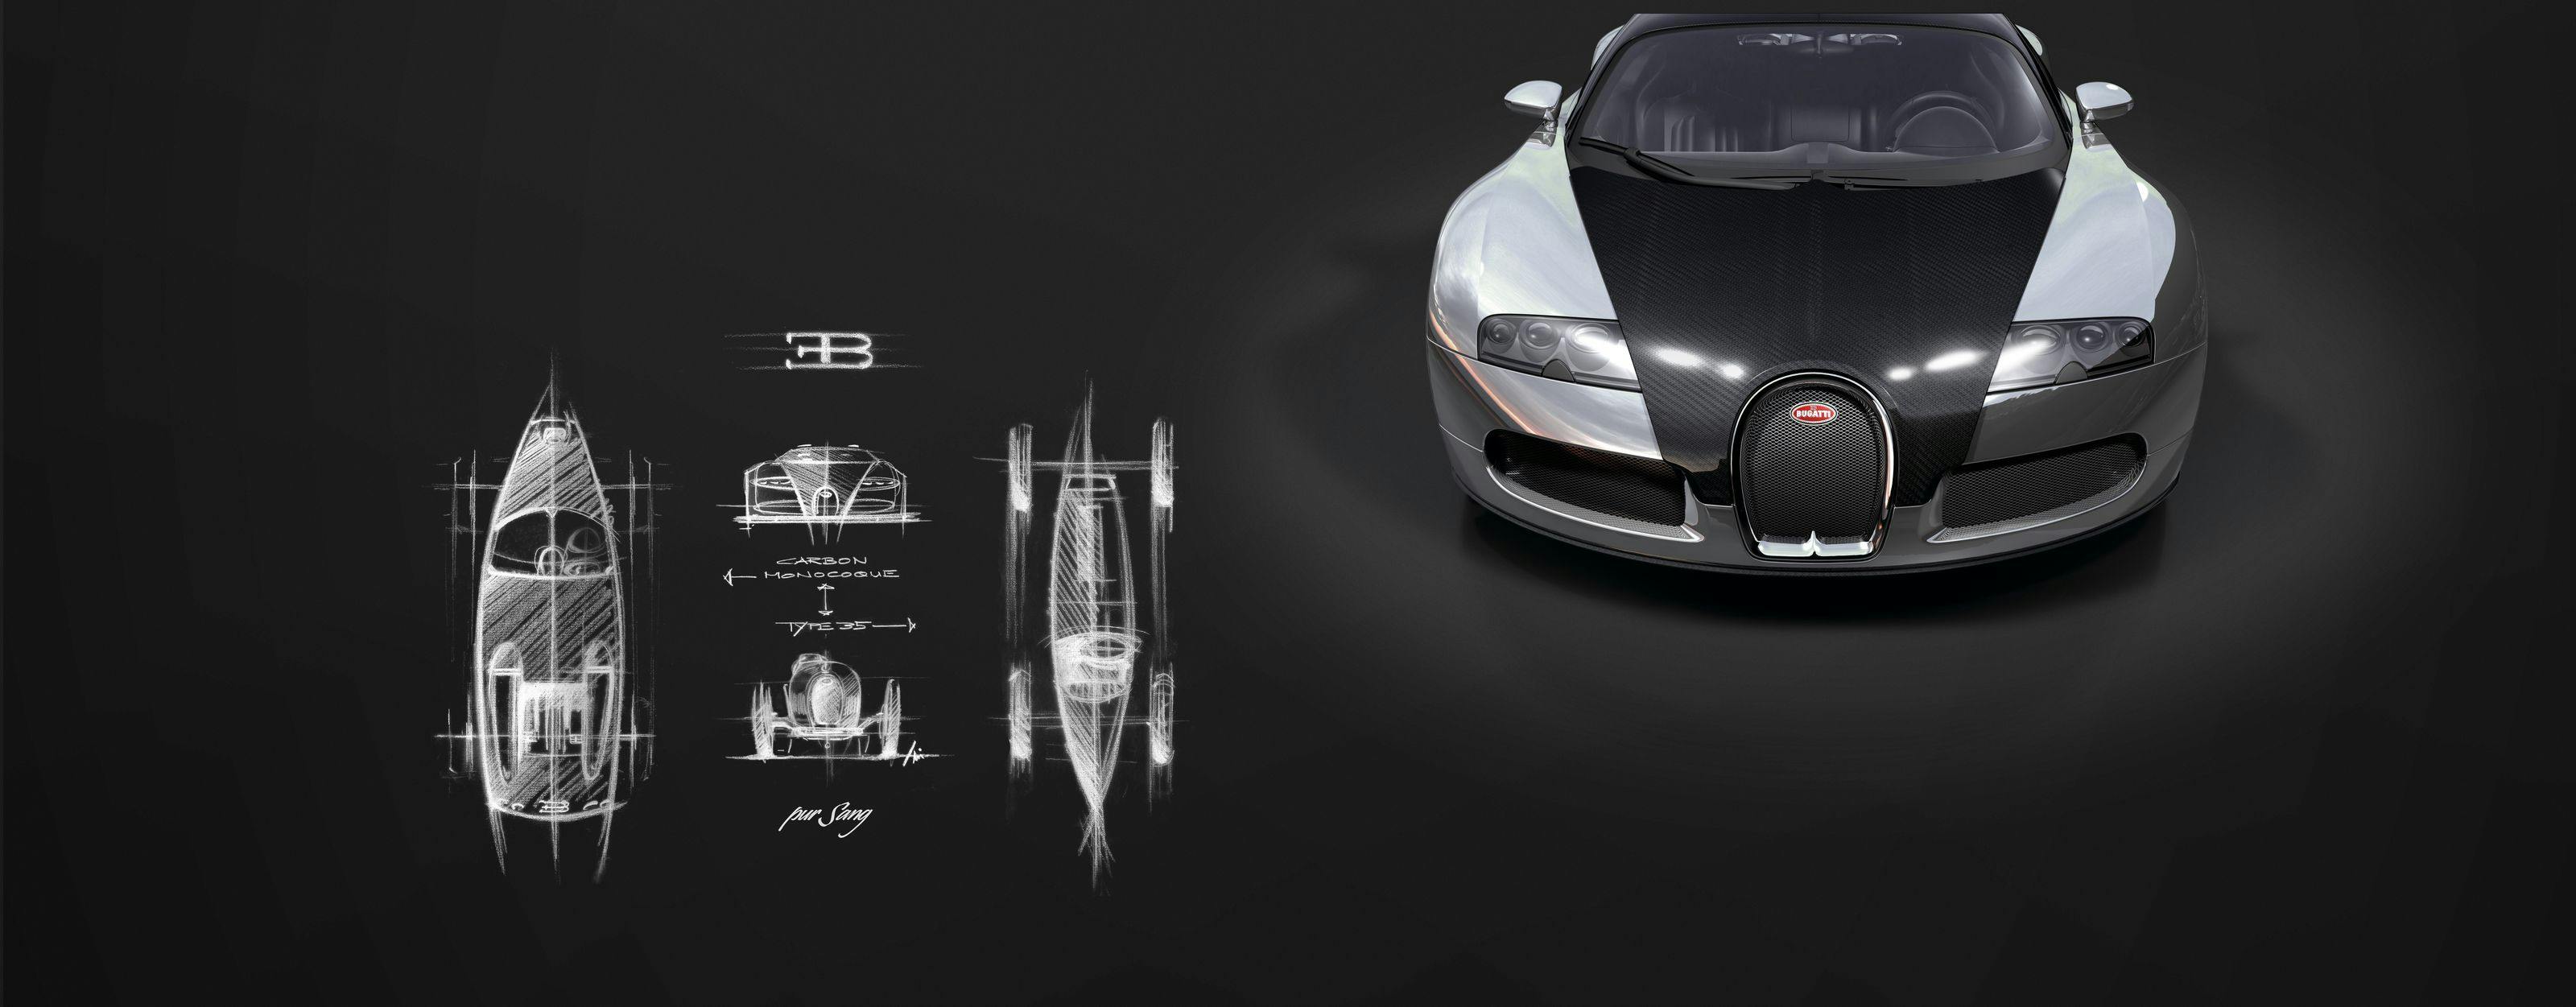 15 Jahre Bugatti Veyron 16.4 – Sechs unvergessene Veyron Modelle